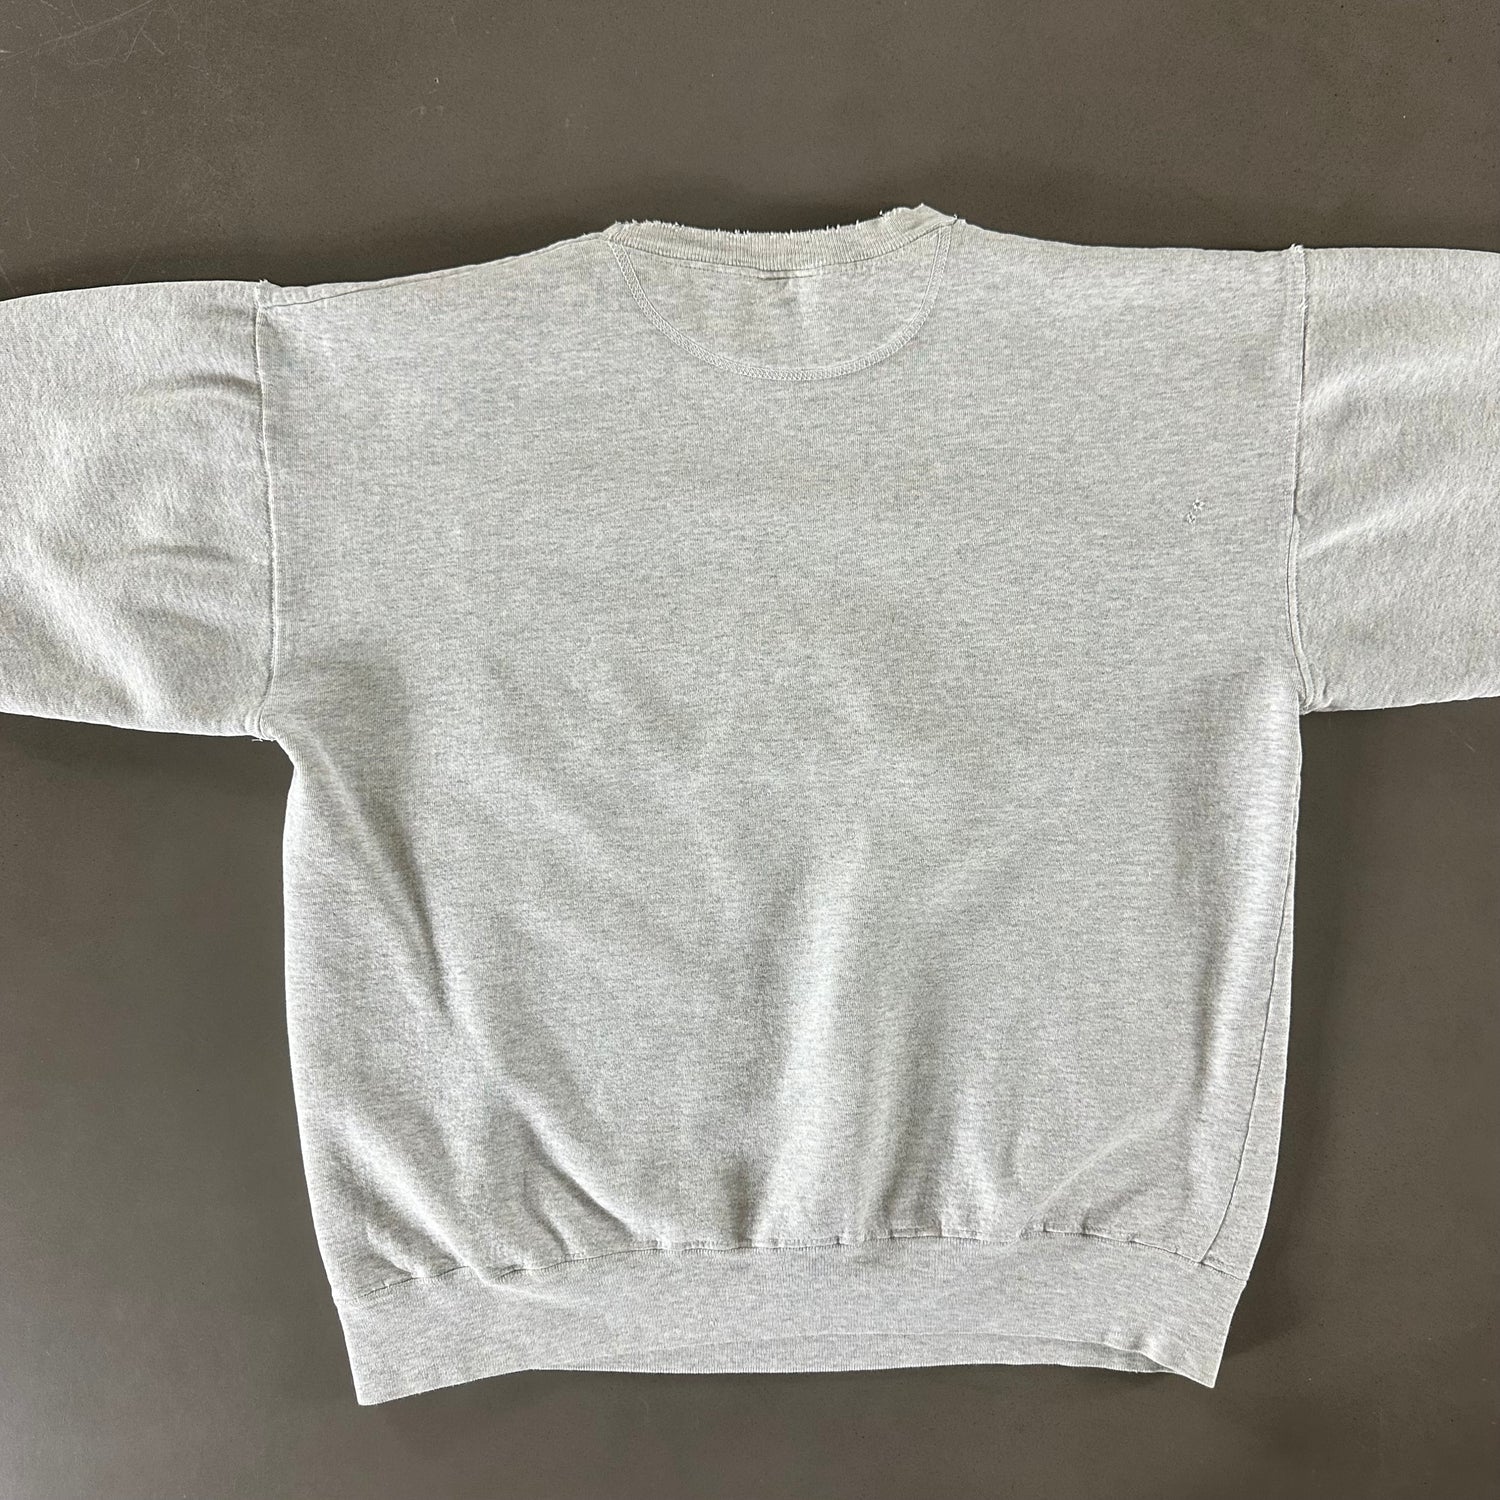 Vintage 1990s MTSU Sweatshirt size XL